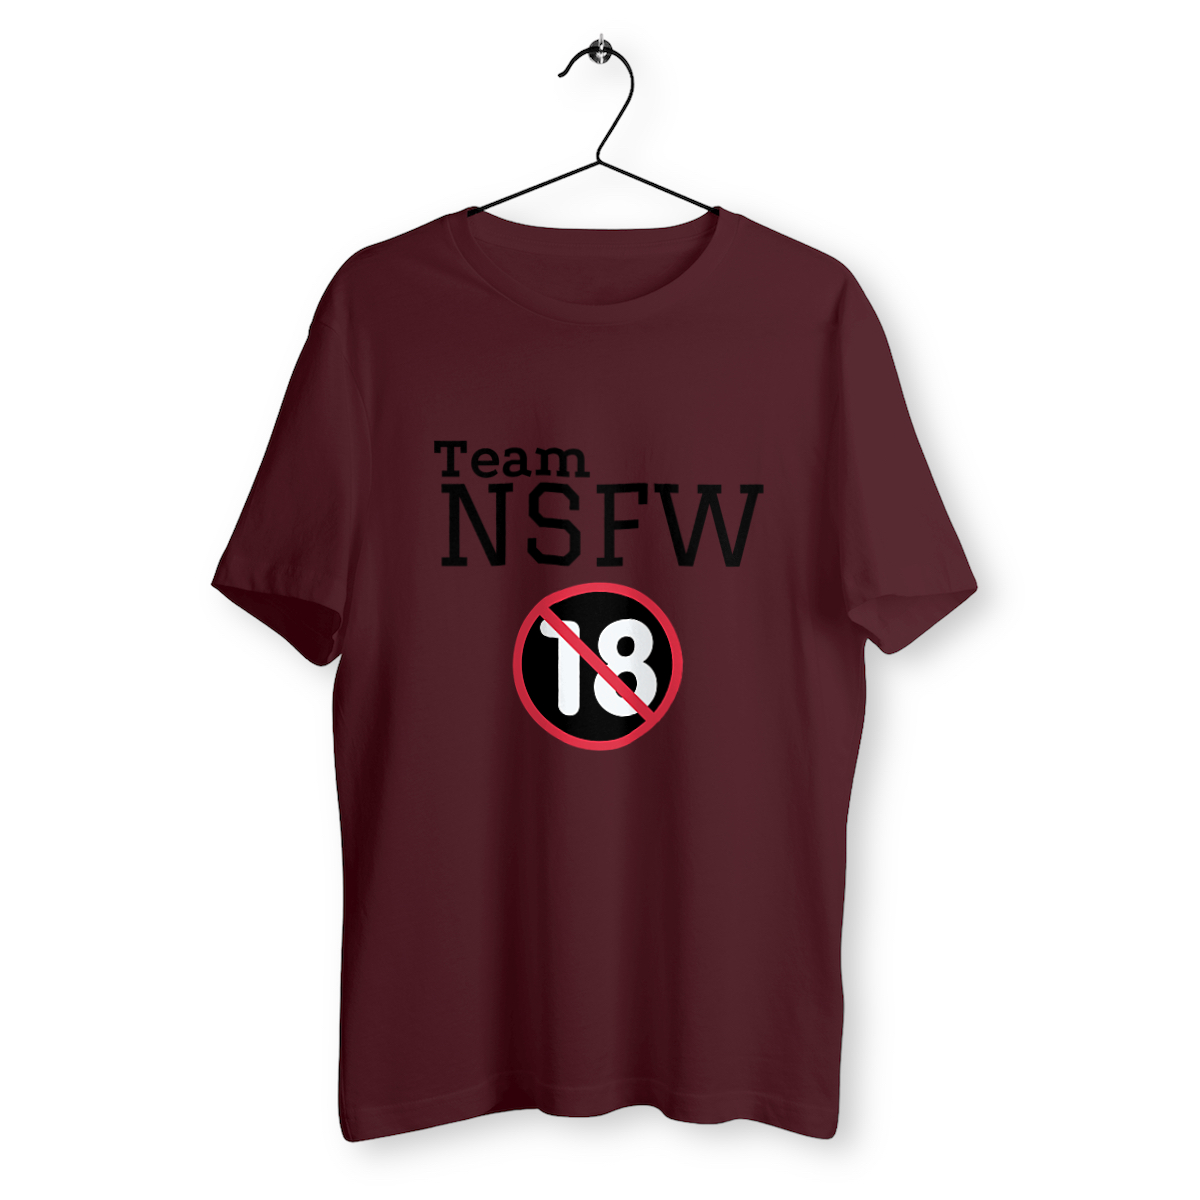 T-shirt "Team NSFW"